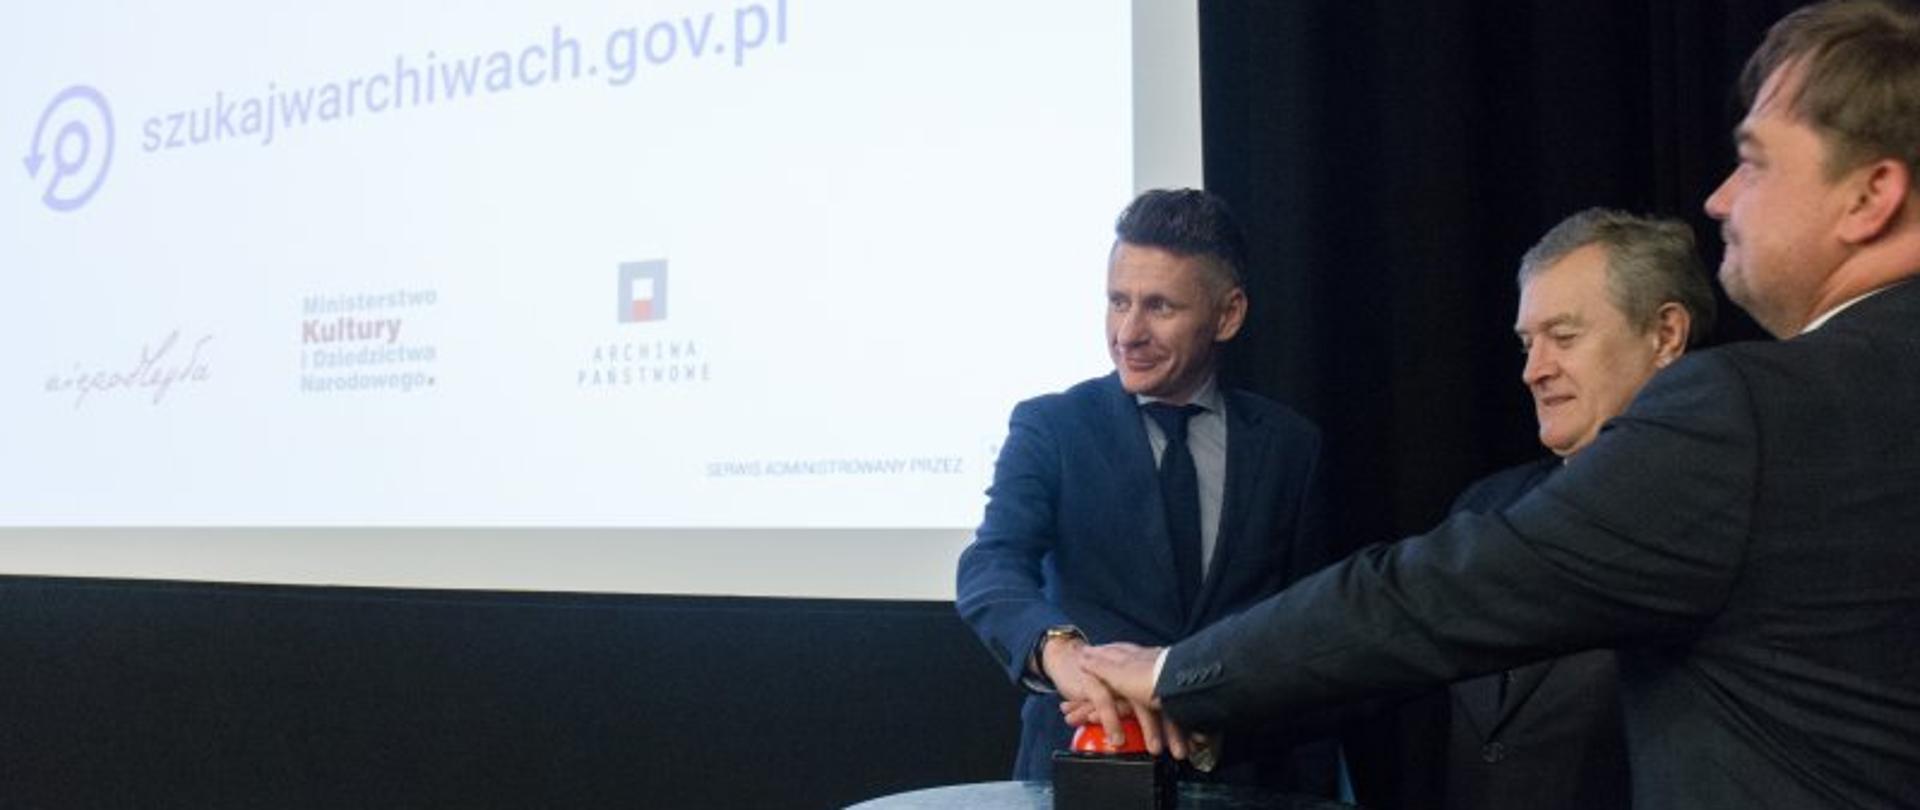 Wicepremier Gliński zainaugurował nową odsłonę serwisu „Szukaj w Archiwach” fot. Jacek Lagowski